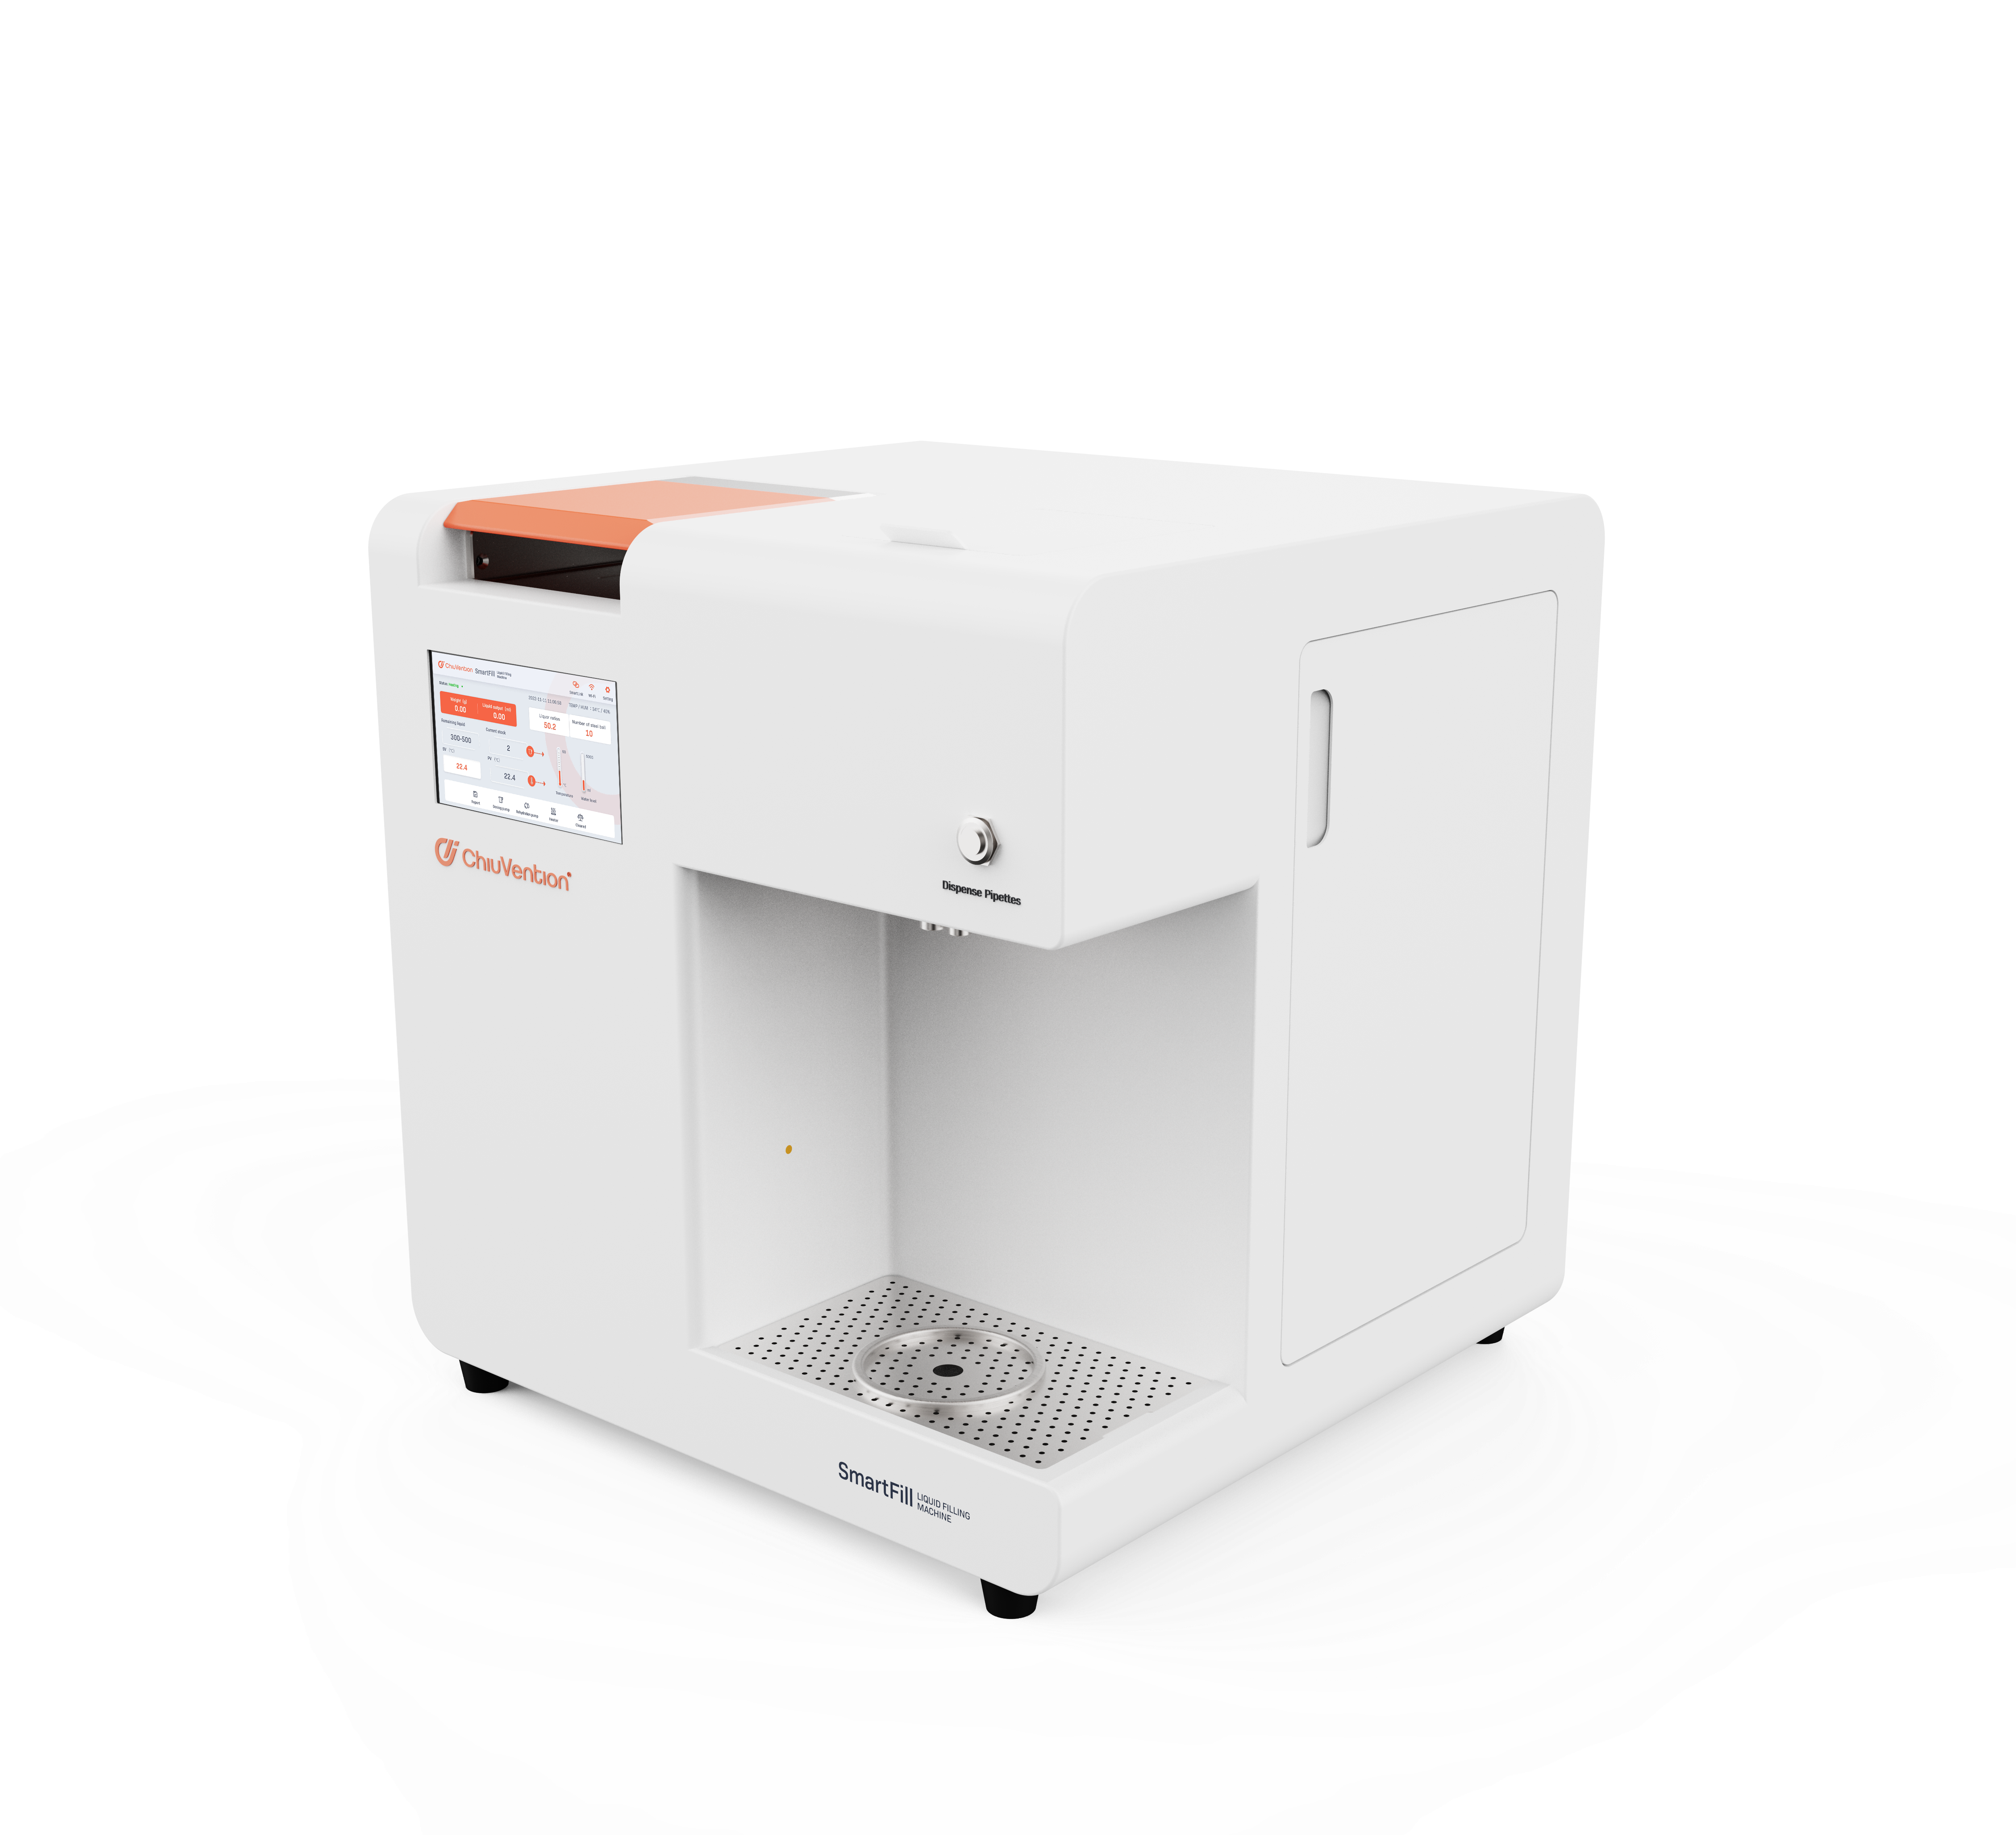 Macchina per la preparazione dei campioni per test di solidità al lavaggio SmartFill | Uno strumento intelligente sviluppato dalla società sorella ChiuVention.